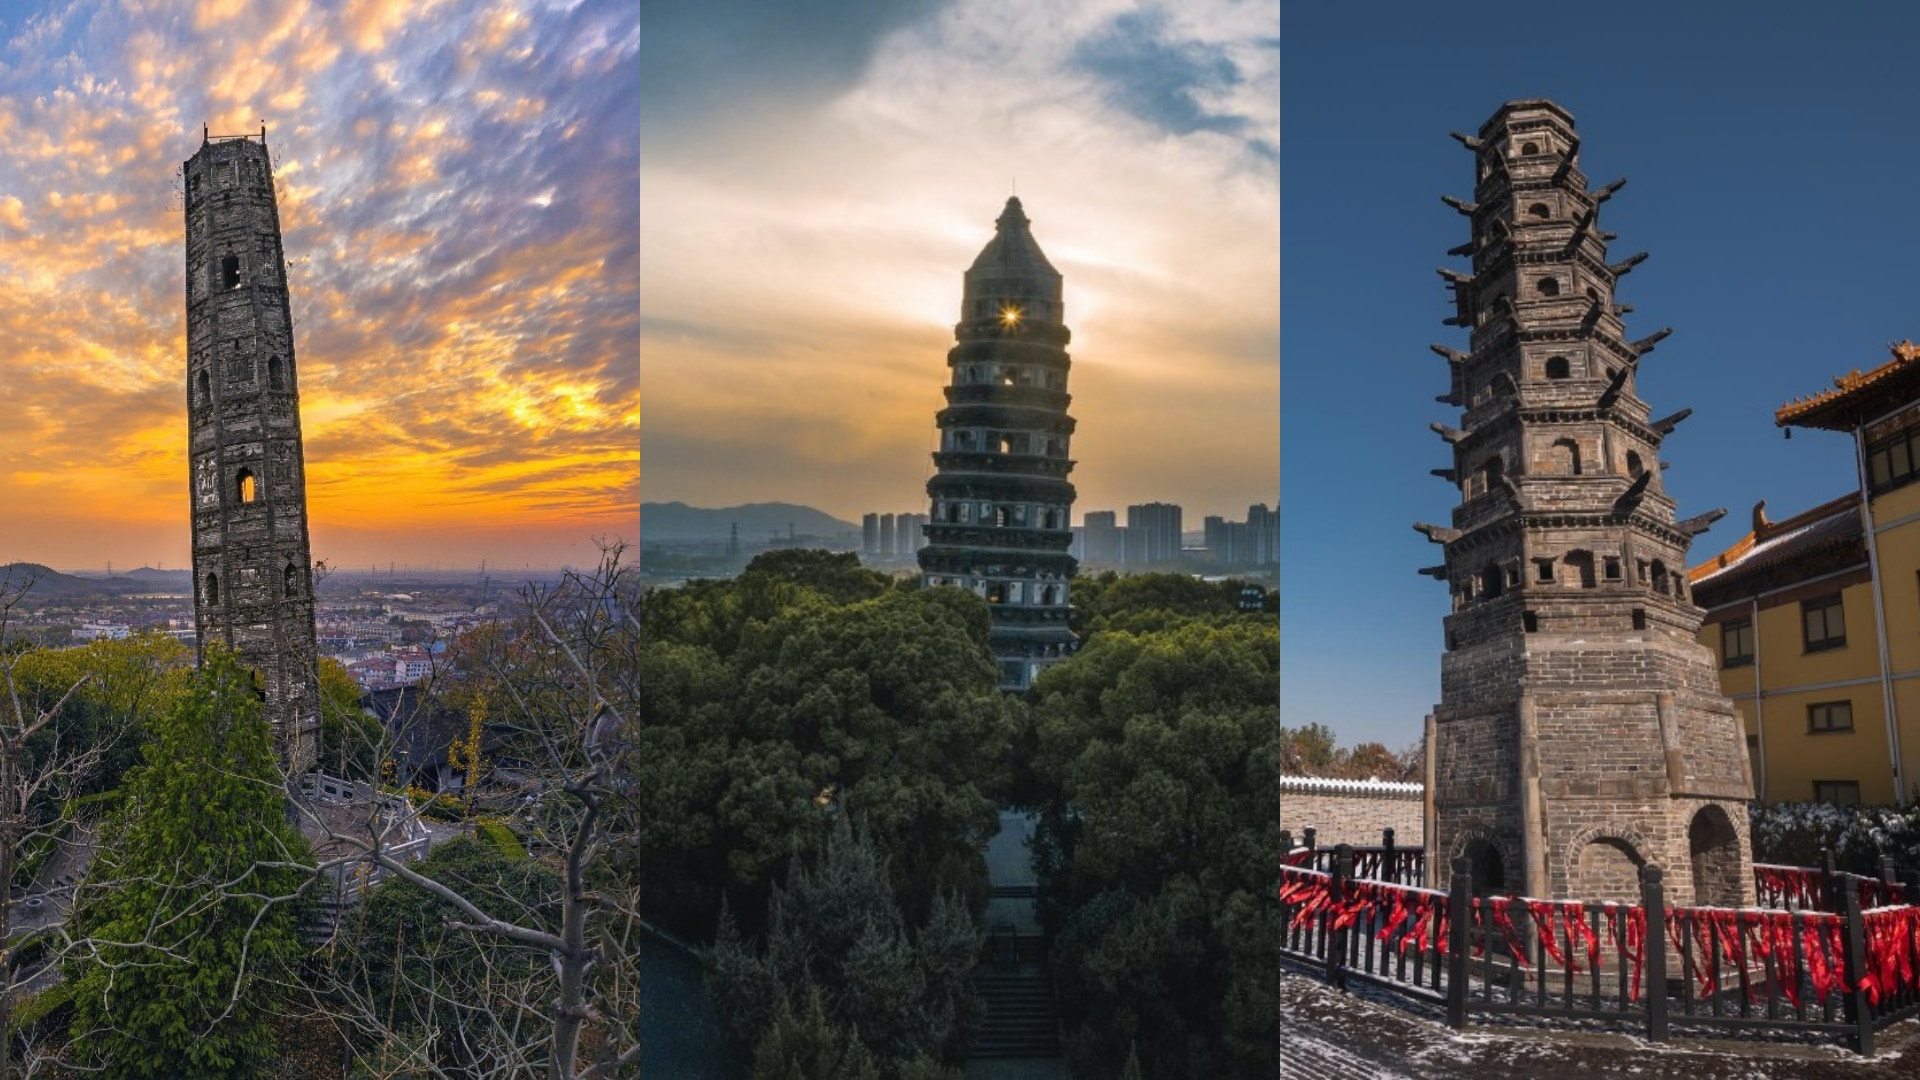 中國六大斜塔更勝比薩斜塔 湖北斜塔耗8萬斤鐵 遼寧塔全球最斜